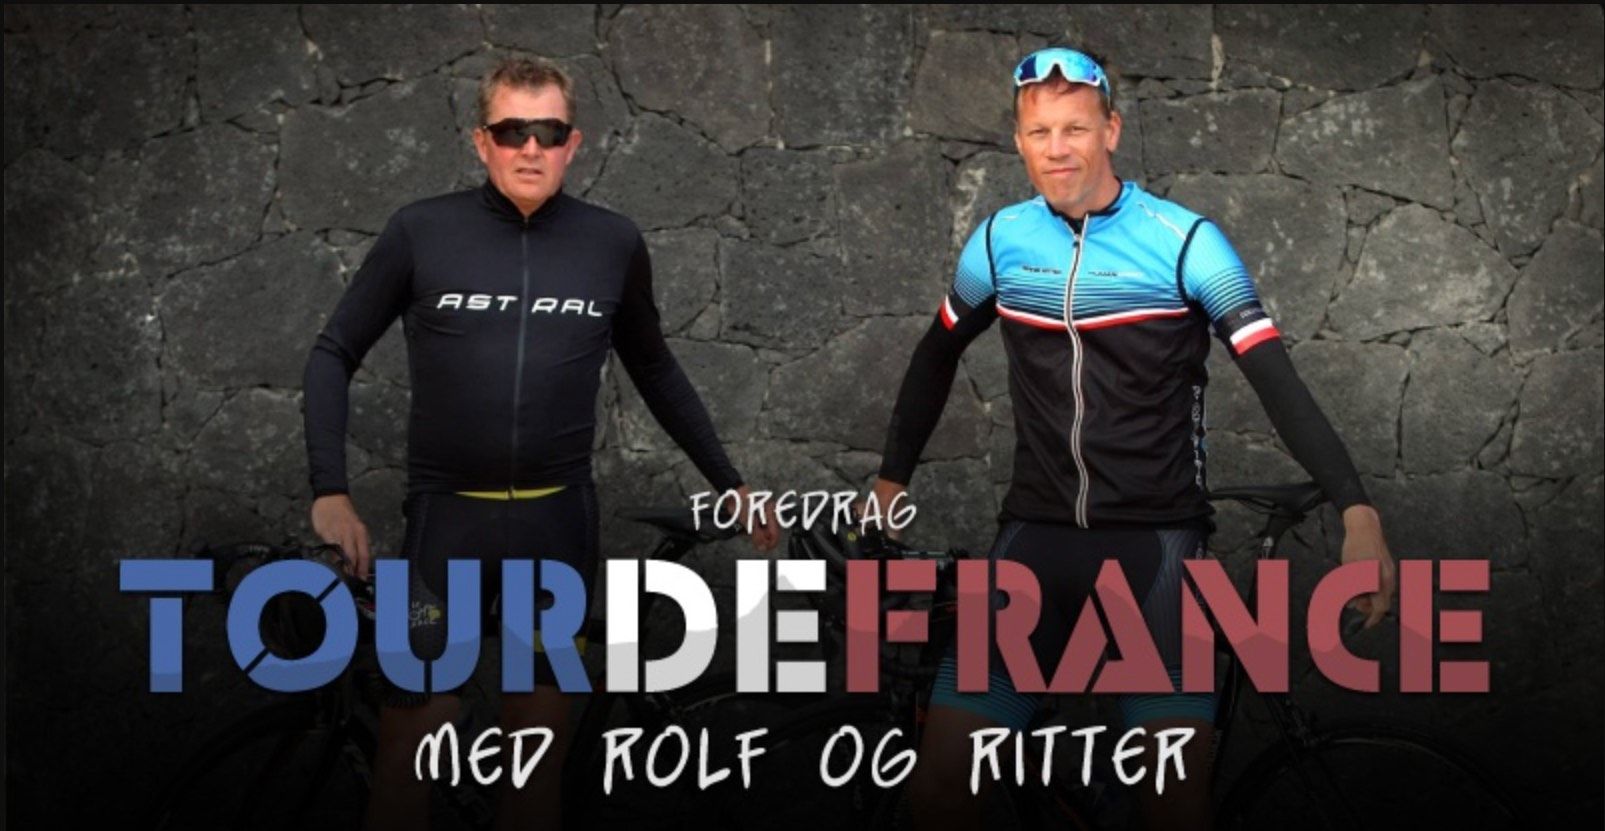 Sportsbegivenheder i Aarhus - Rolf Ritter Cykling foredrag